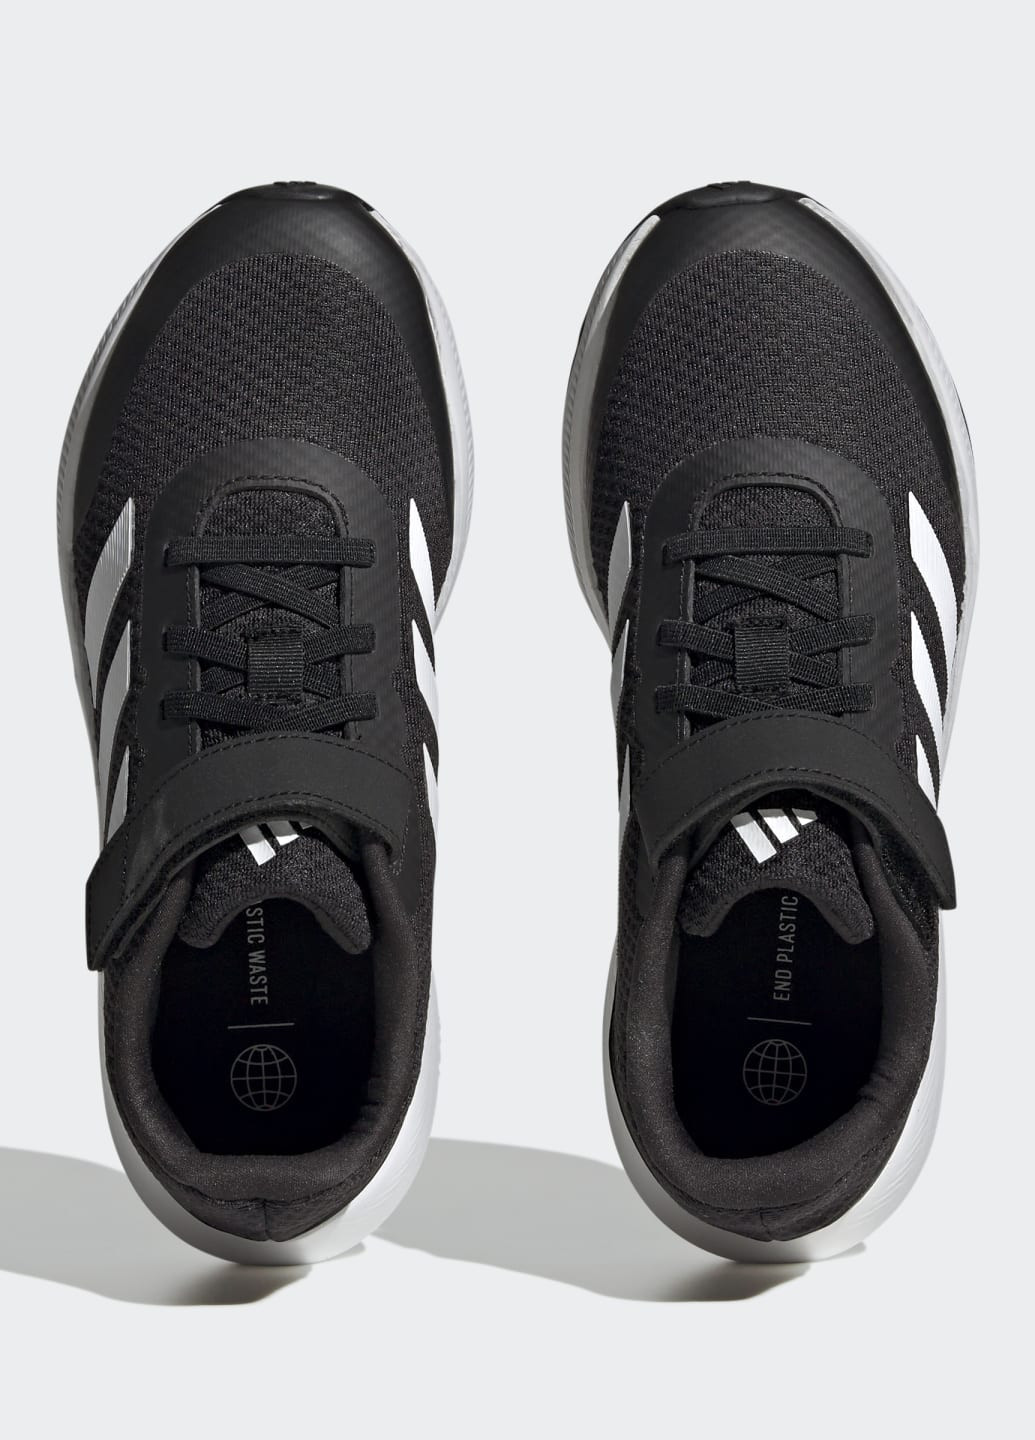 Черные всесезонные кроссовки runfalcon 3.0 adidas